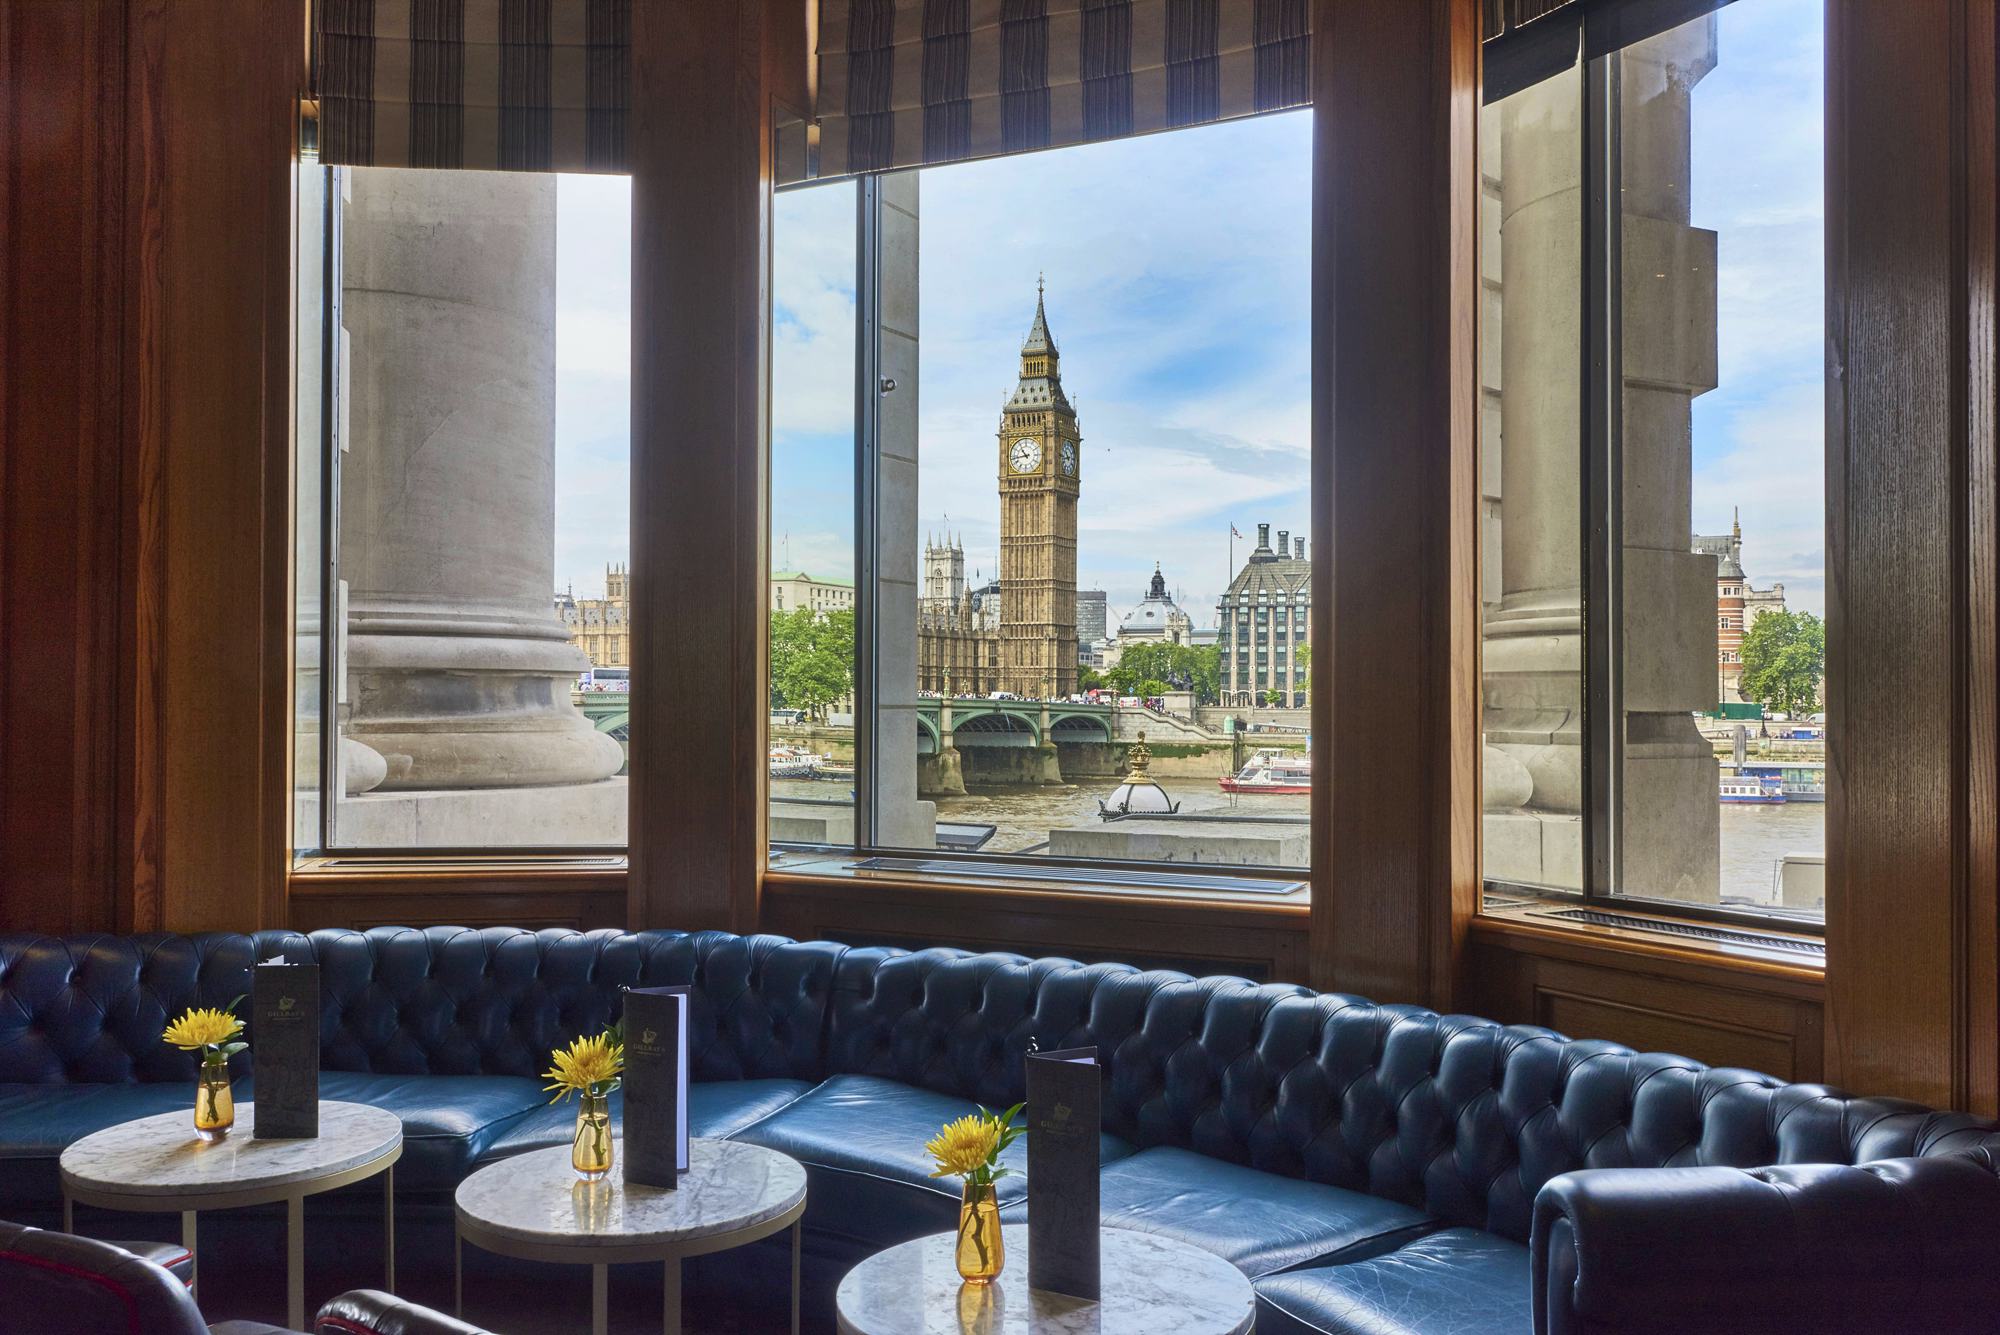 London Marriott County Hall restaurant view of Big Ben